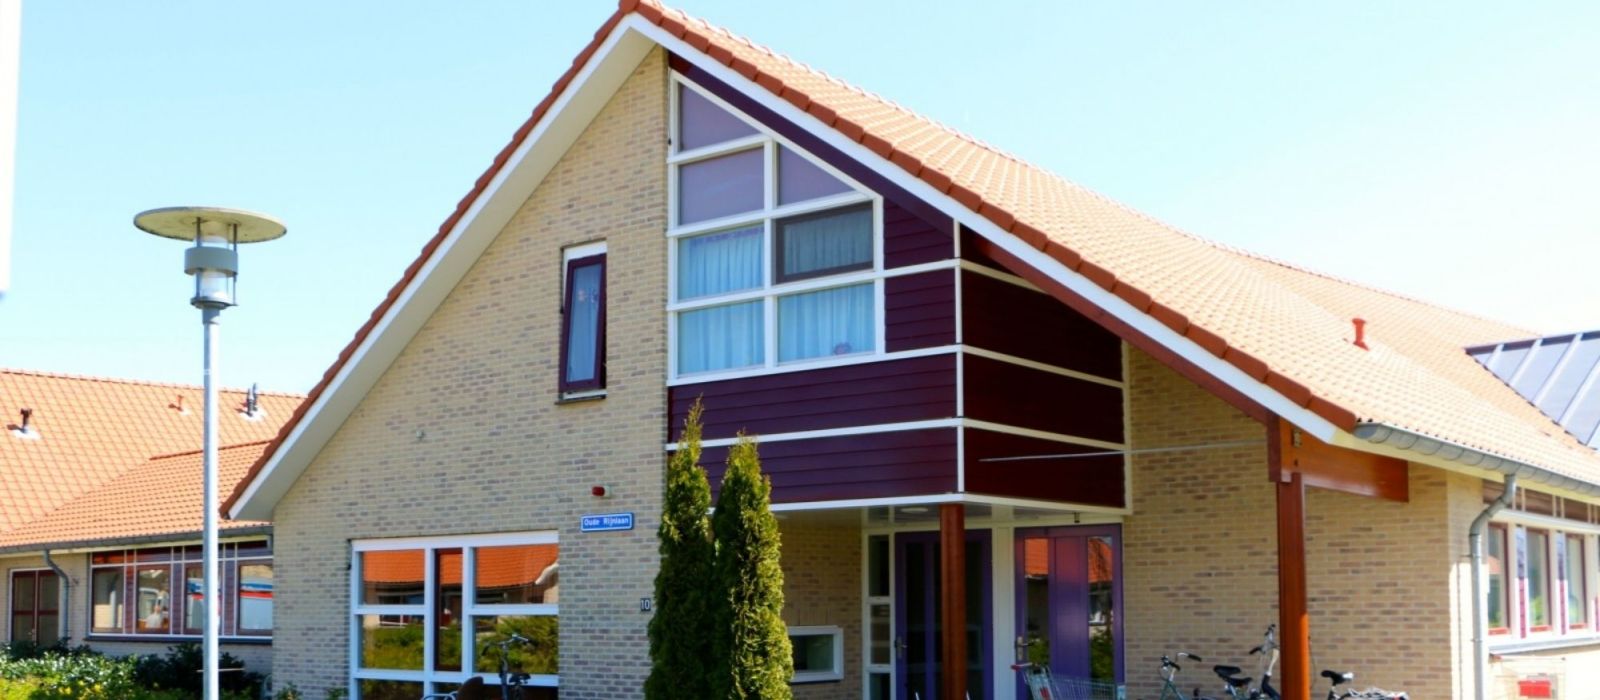 Woning woonlocatie Oude Rijnlaan 10-12 in Zwammerdam